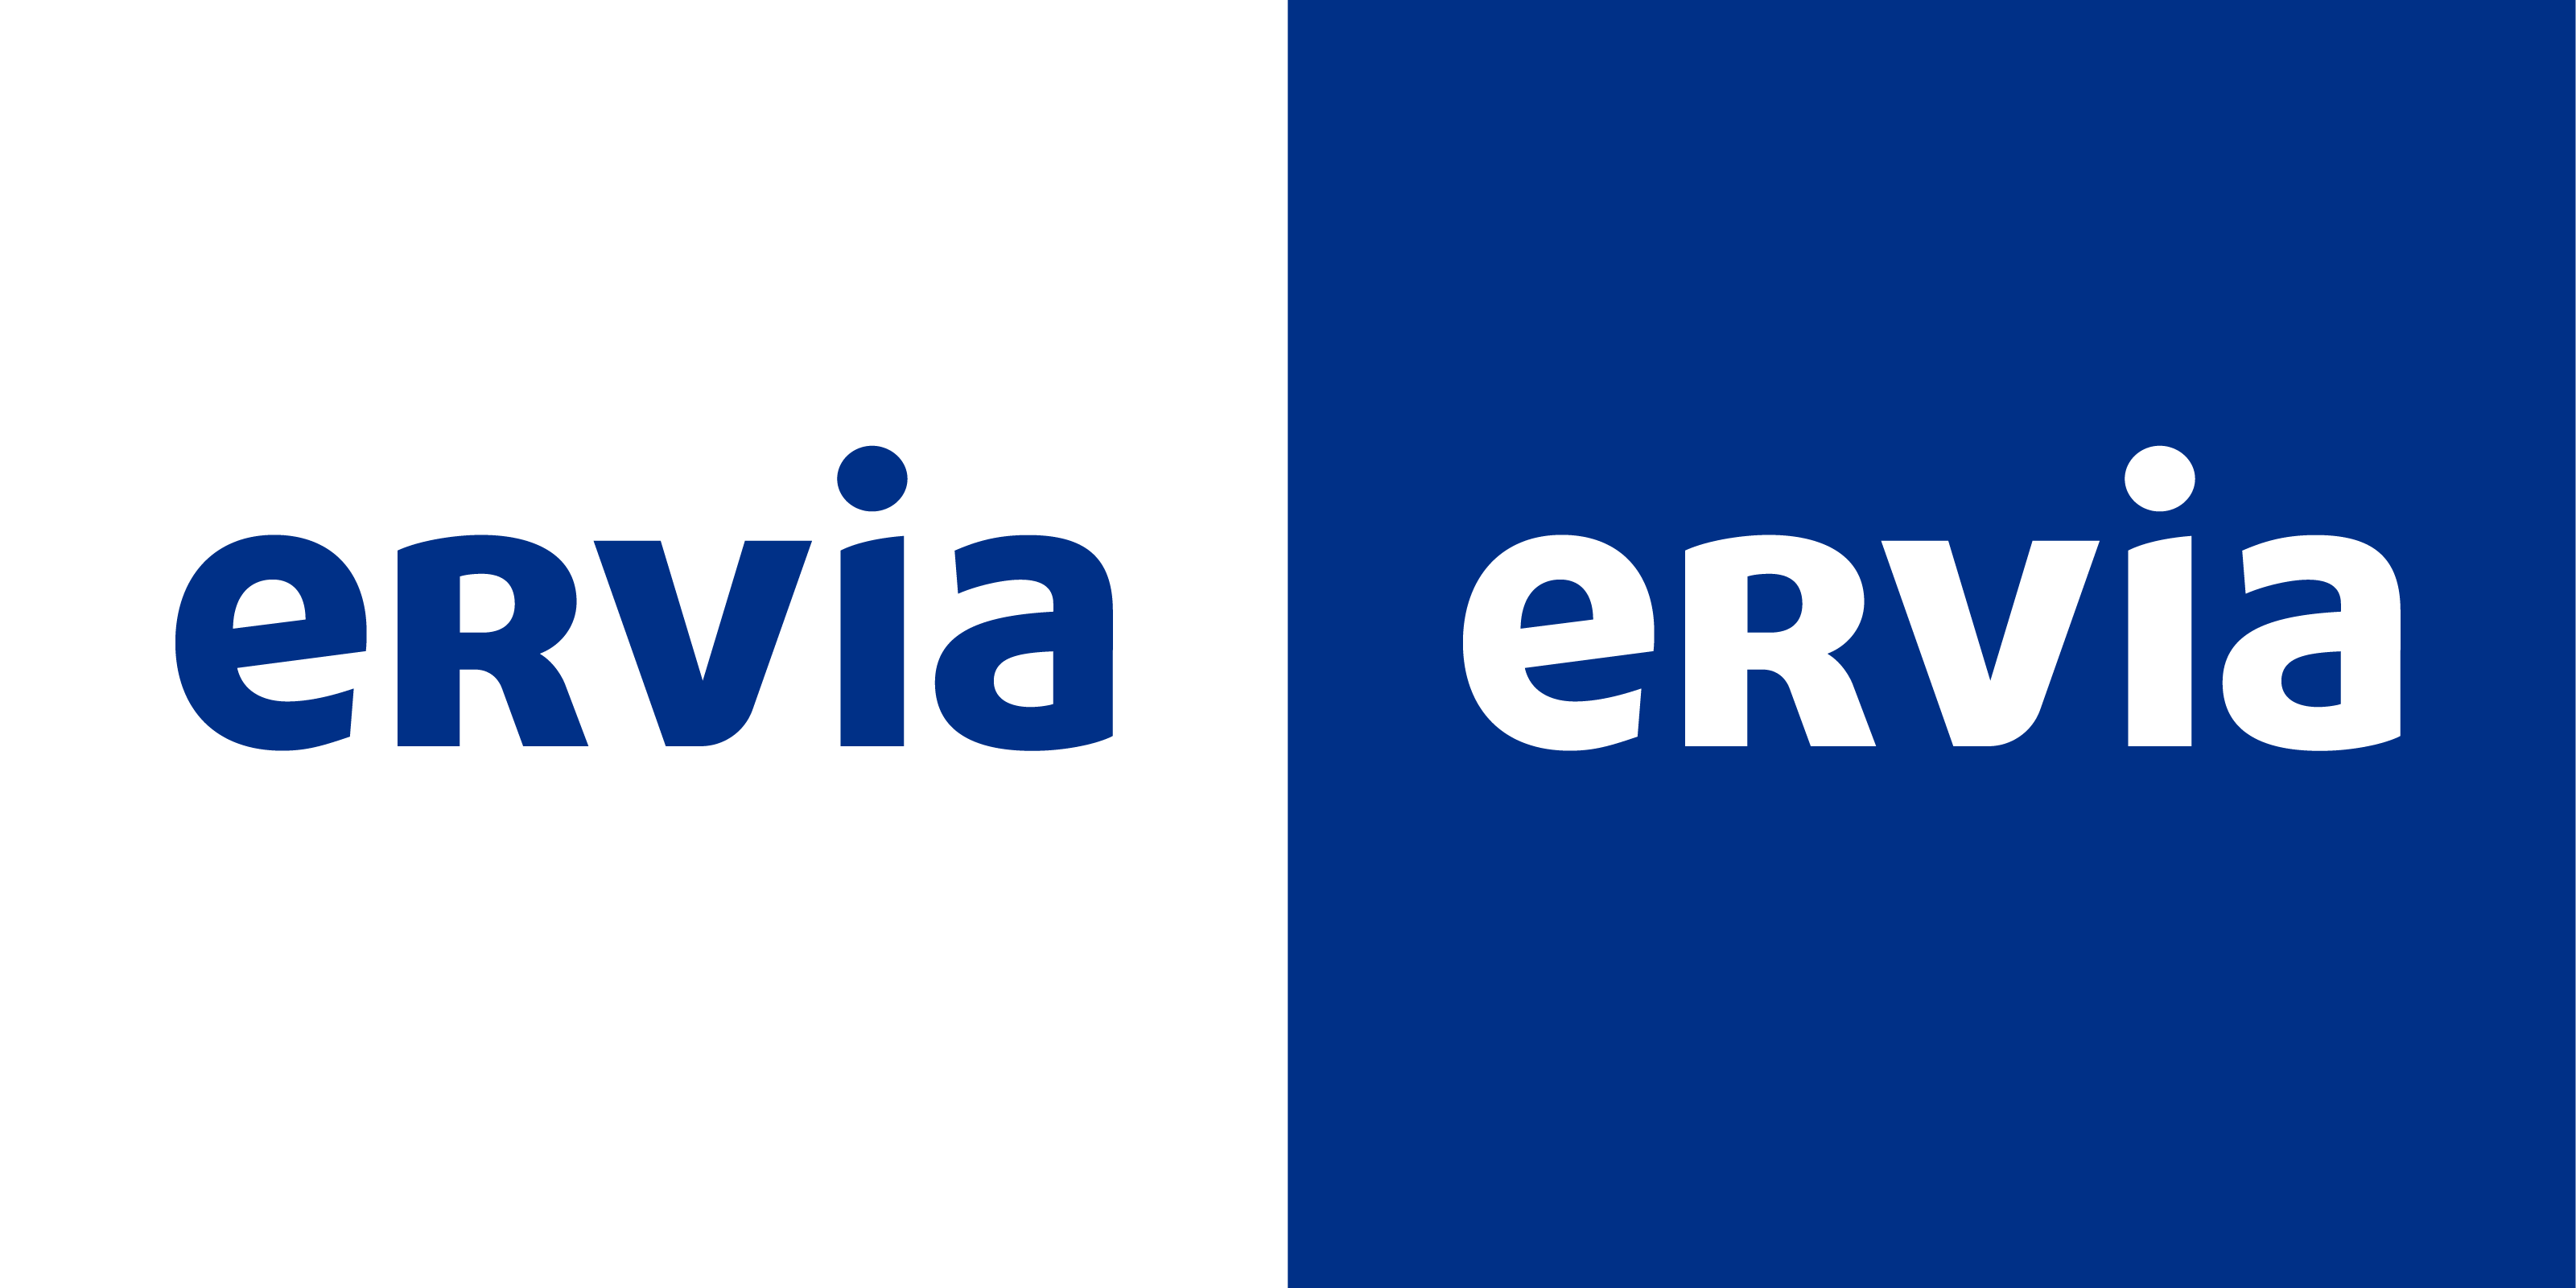 ERVIA logo